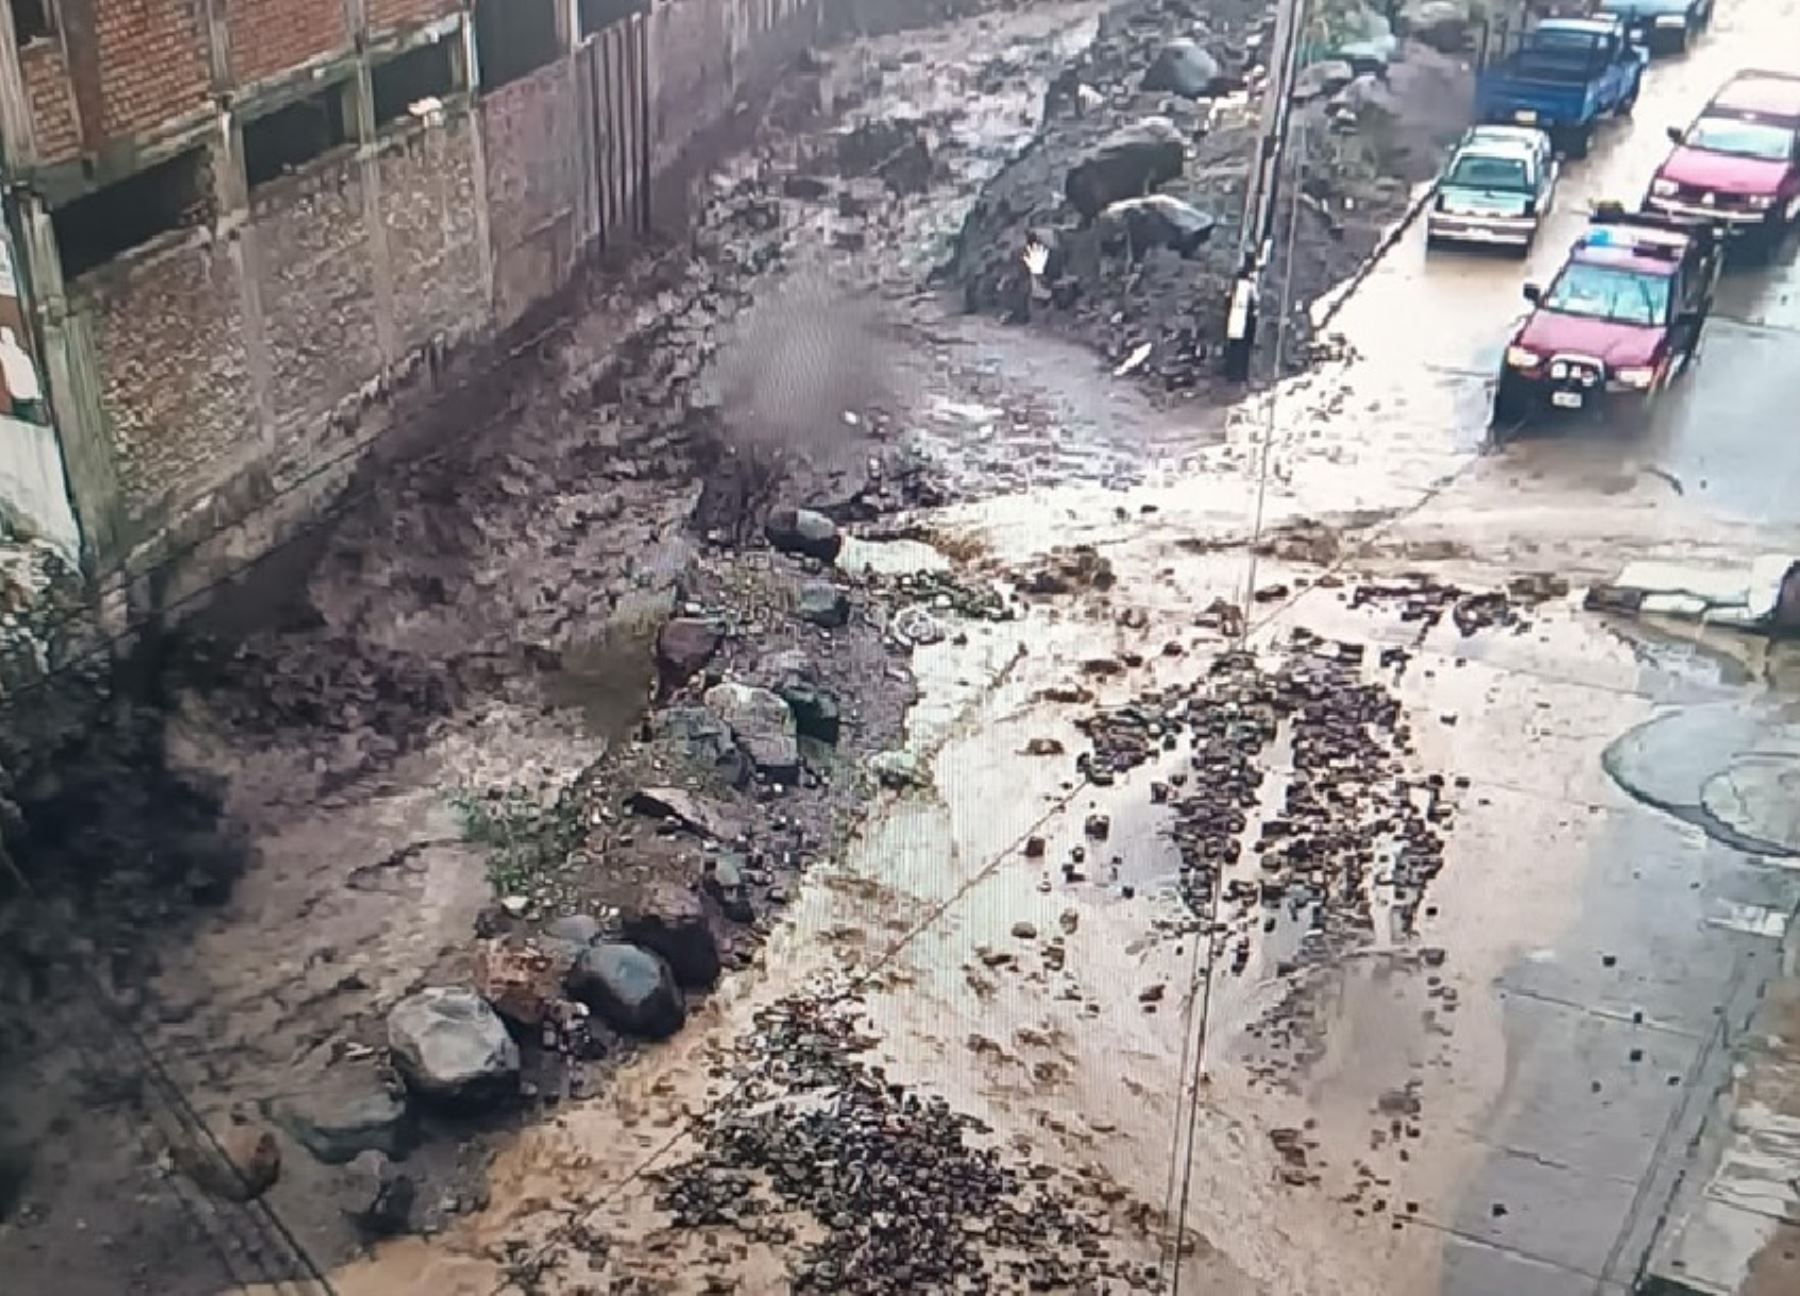 El distrito de Paucarpata es el distrito más afectado por las lluvias intensas registradas ayer en Arequipa. Varias viviendas y calles sufrieron daños por las fuertes precipitaciones. ANDINA/Difusión